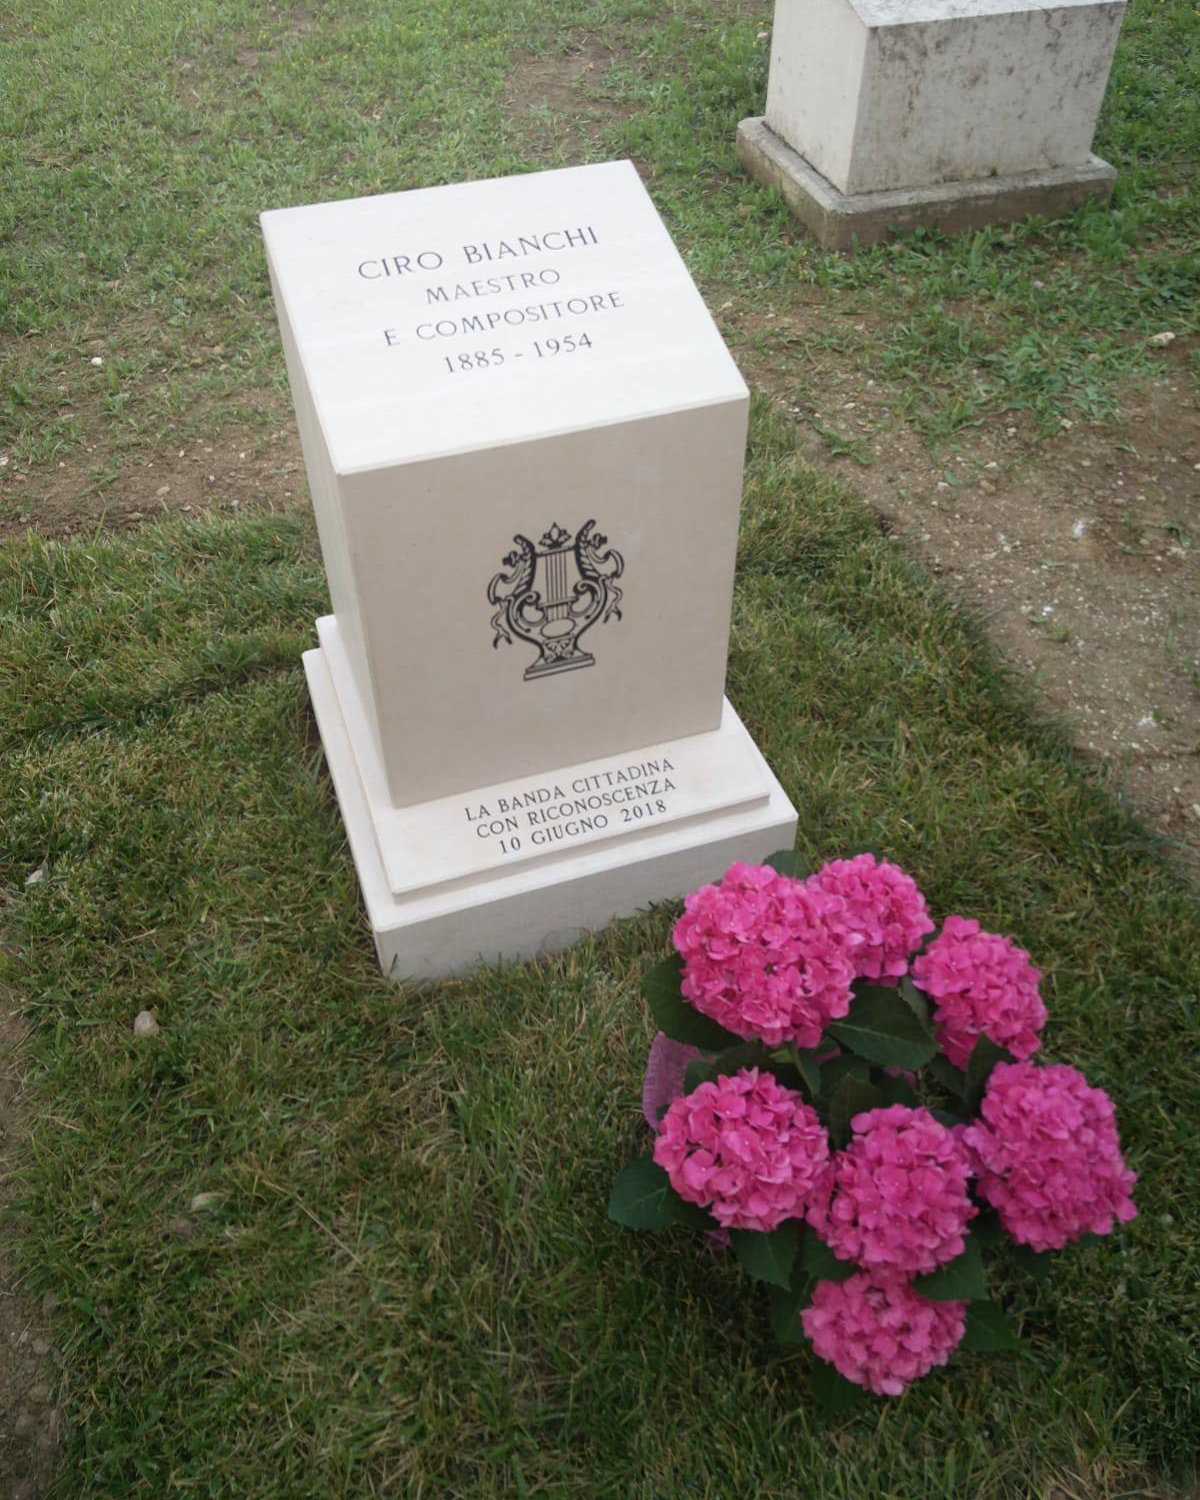 Monumento funebre al Maestro Ciro Bianchi